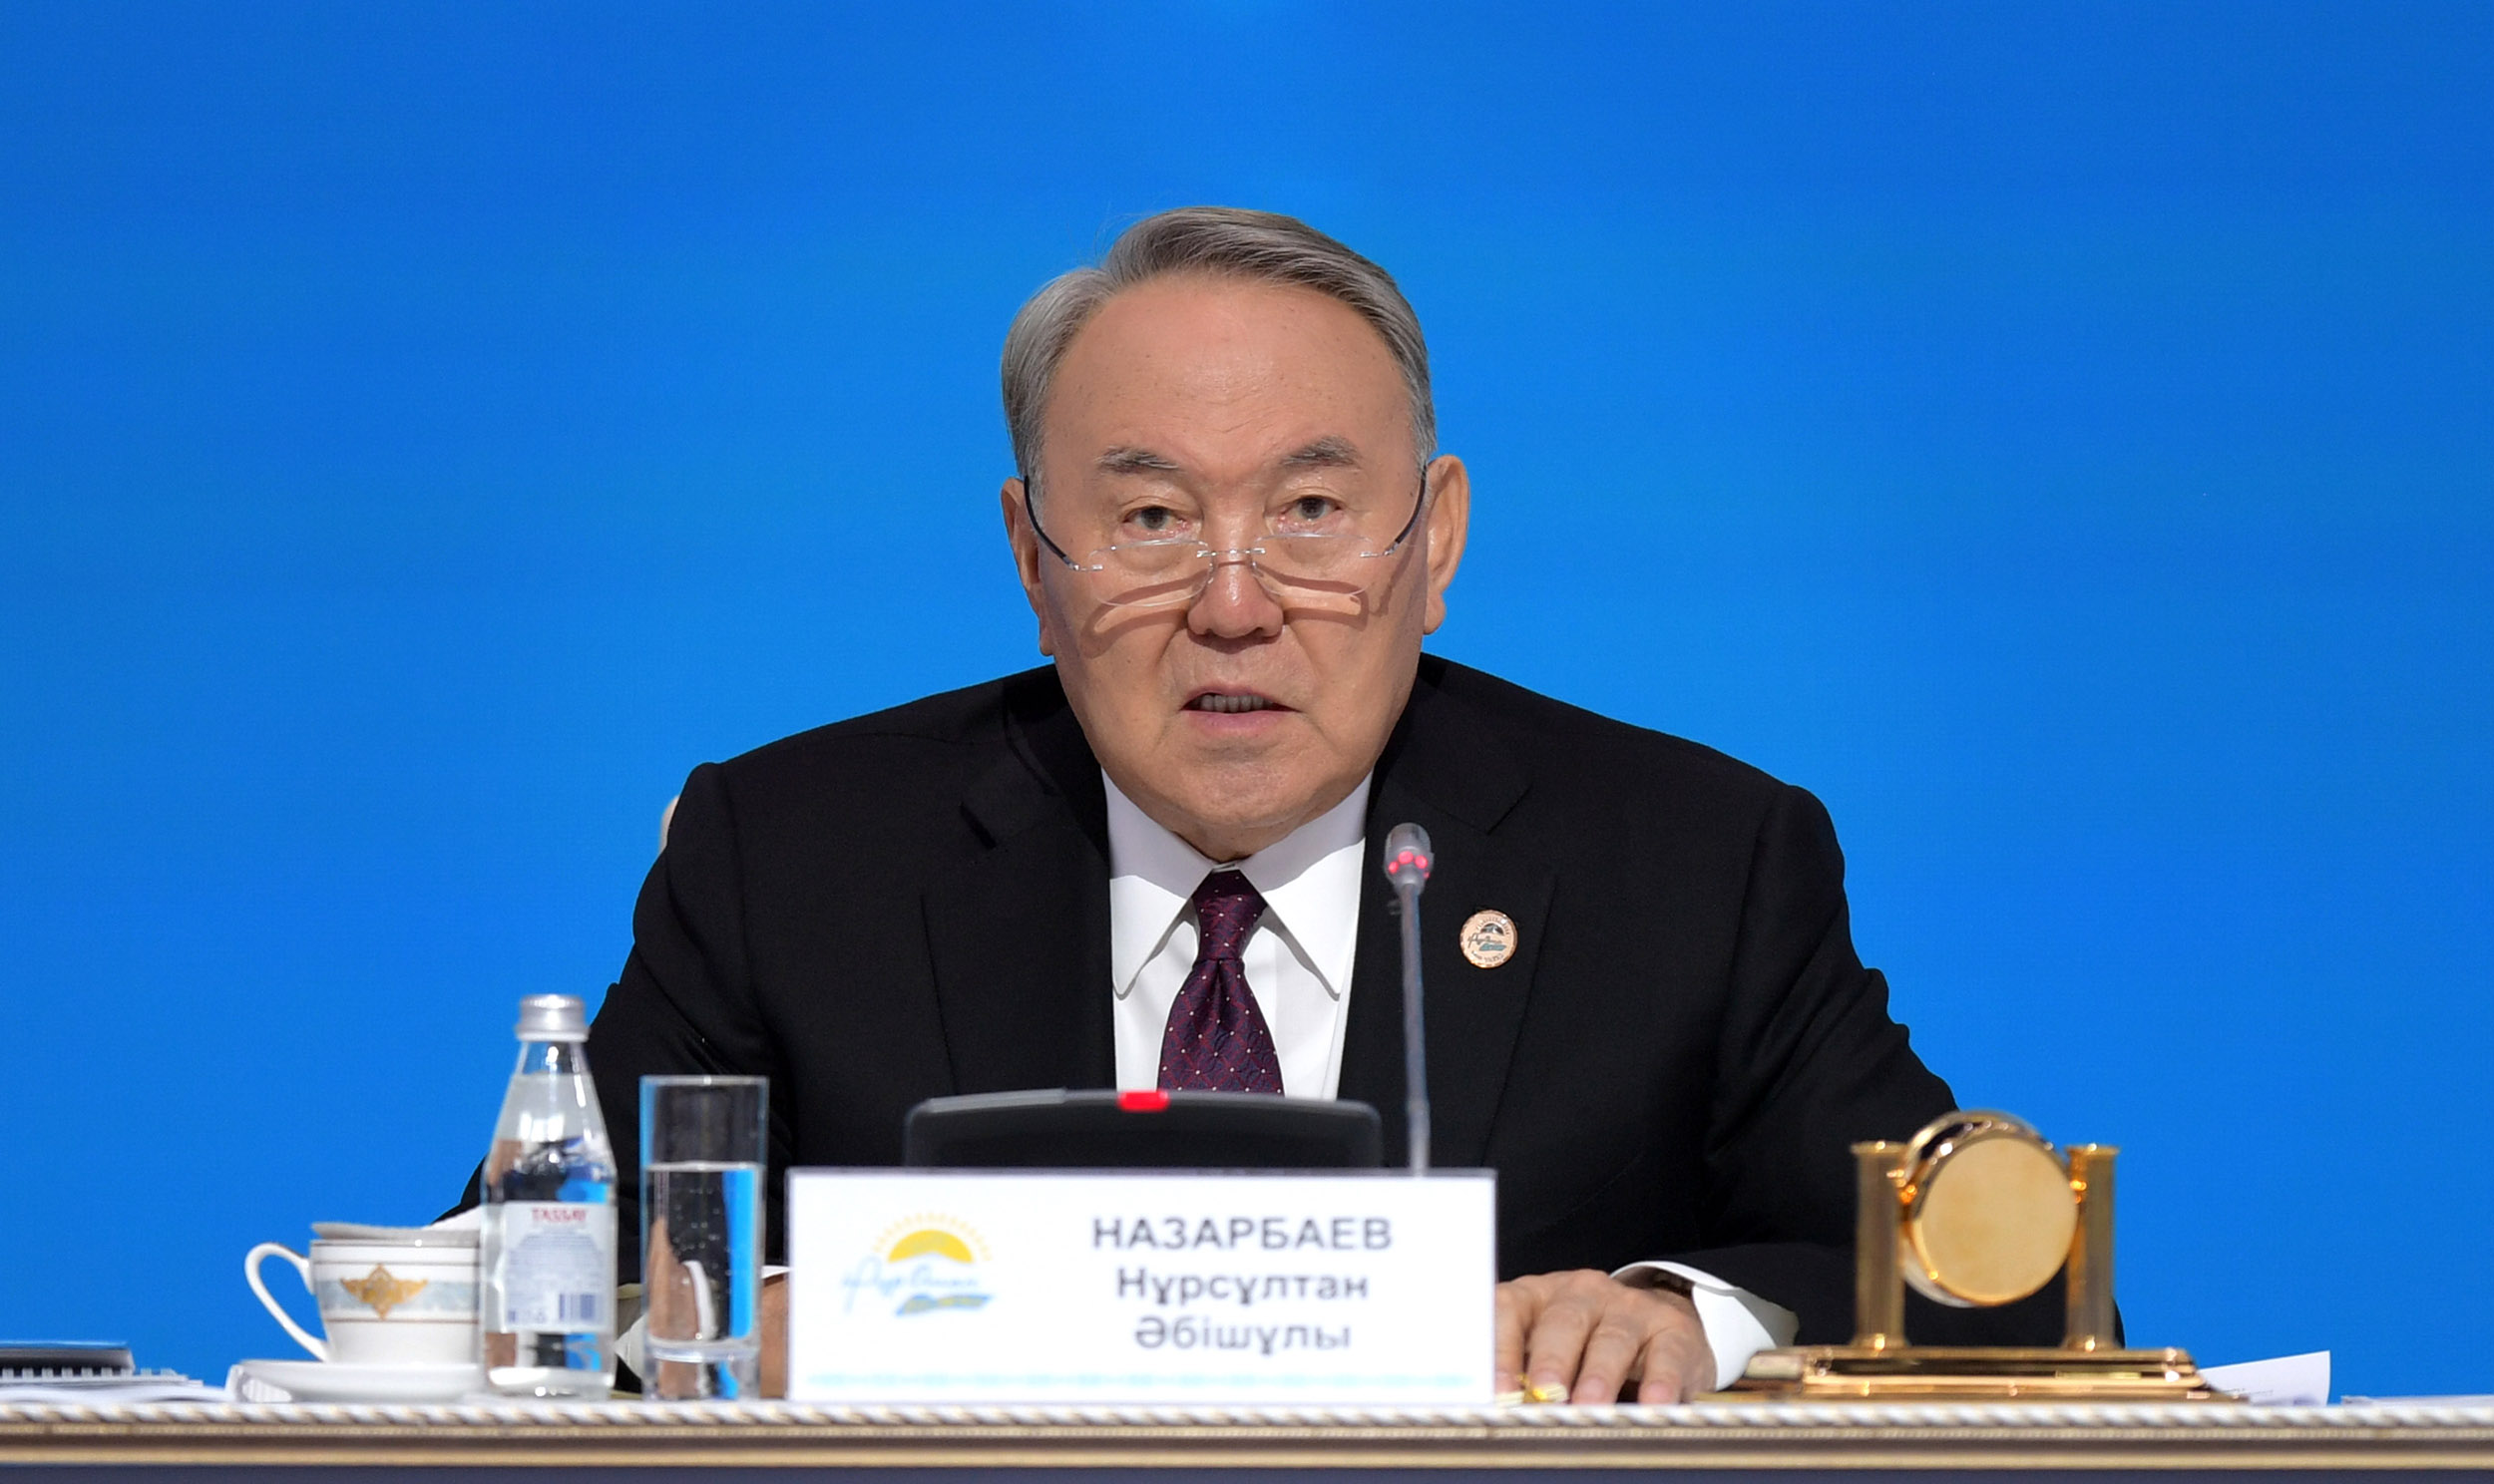 Нұрсұлтан Назарбаевтың «Нұр Отан» партиясының кезекті XVIII съезінде сөйлеген сөзі